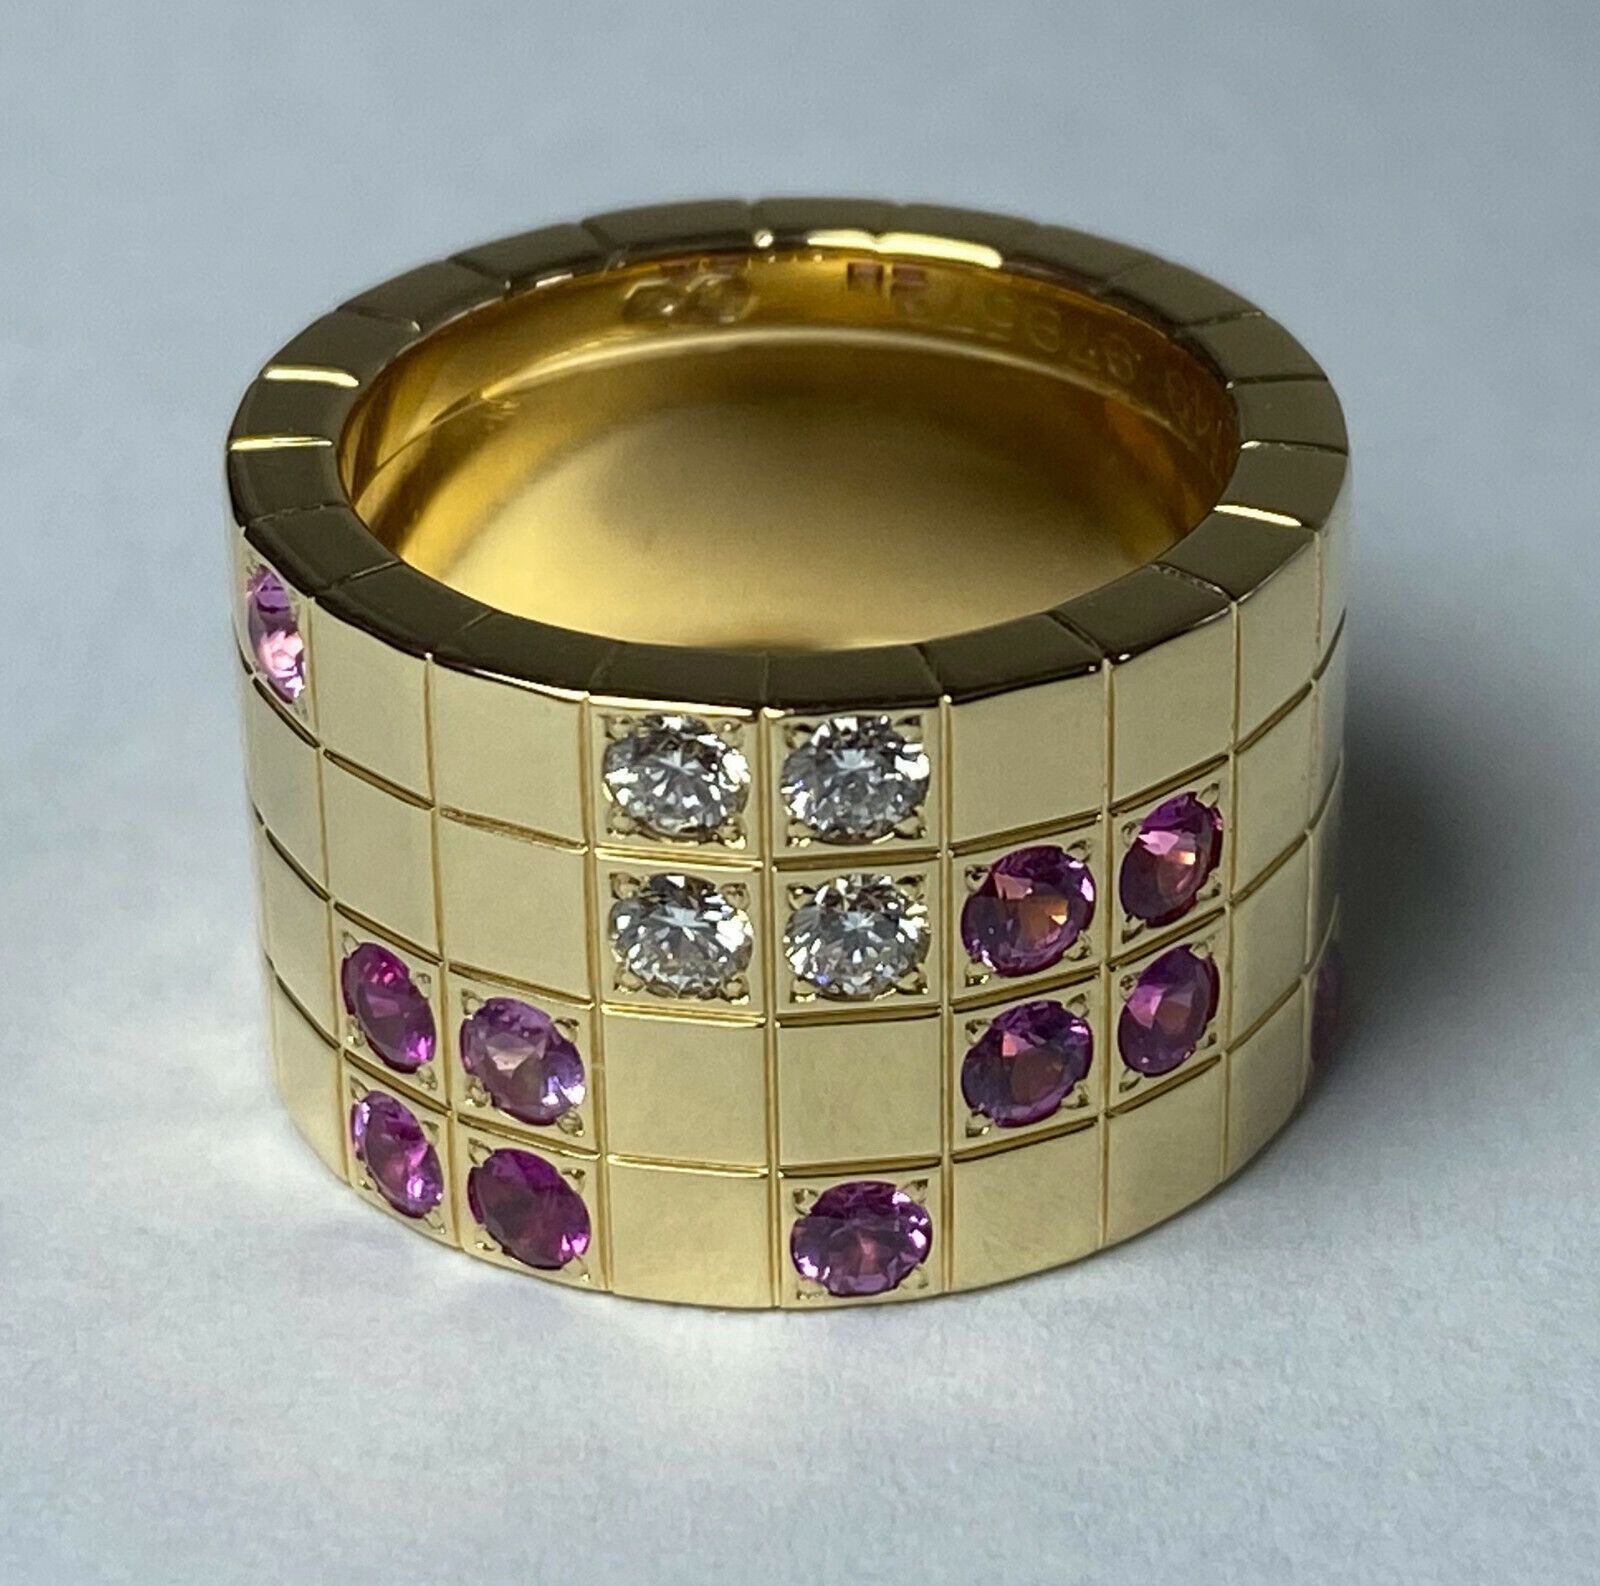 Original Cartier Lanieres Ring - Gelbgold, Diamanten und rosa Saphiren - Gr.49